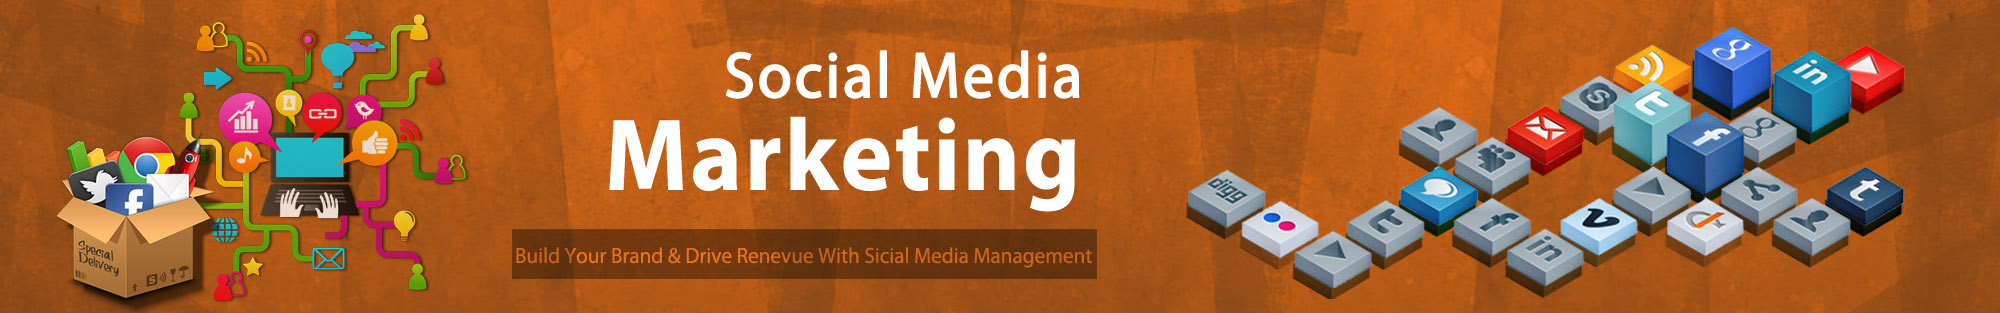 Social Media Marketing Company in Mumbai | Best SMM service